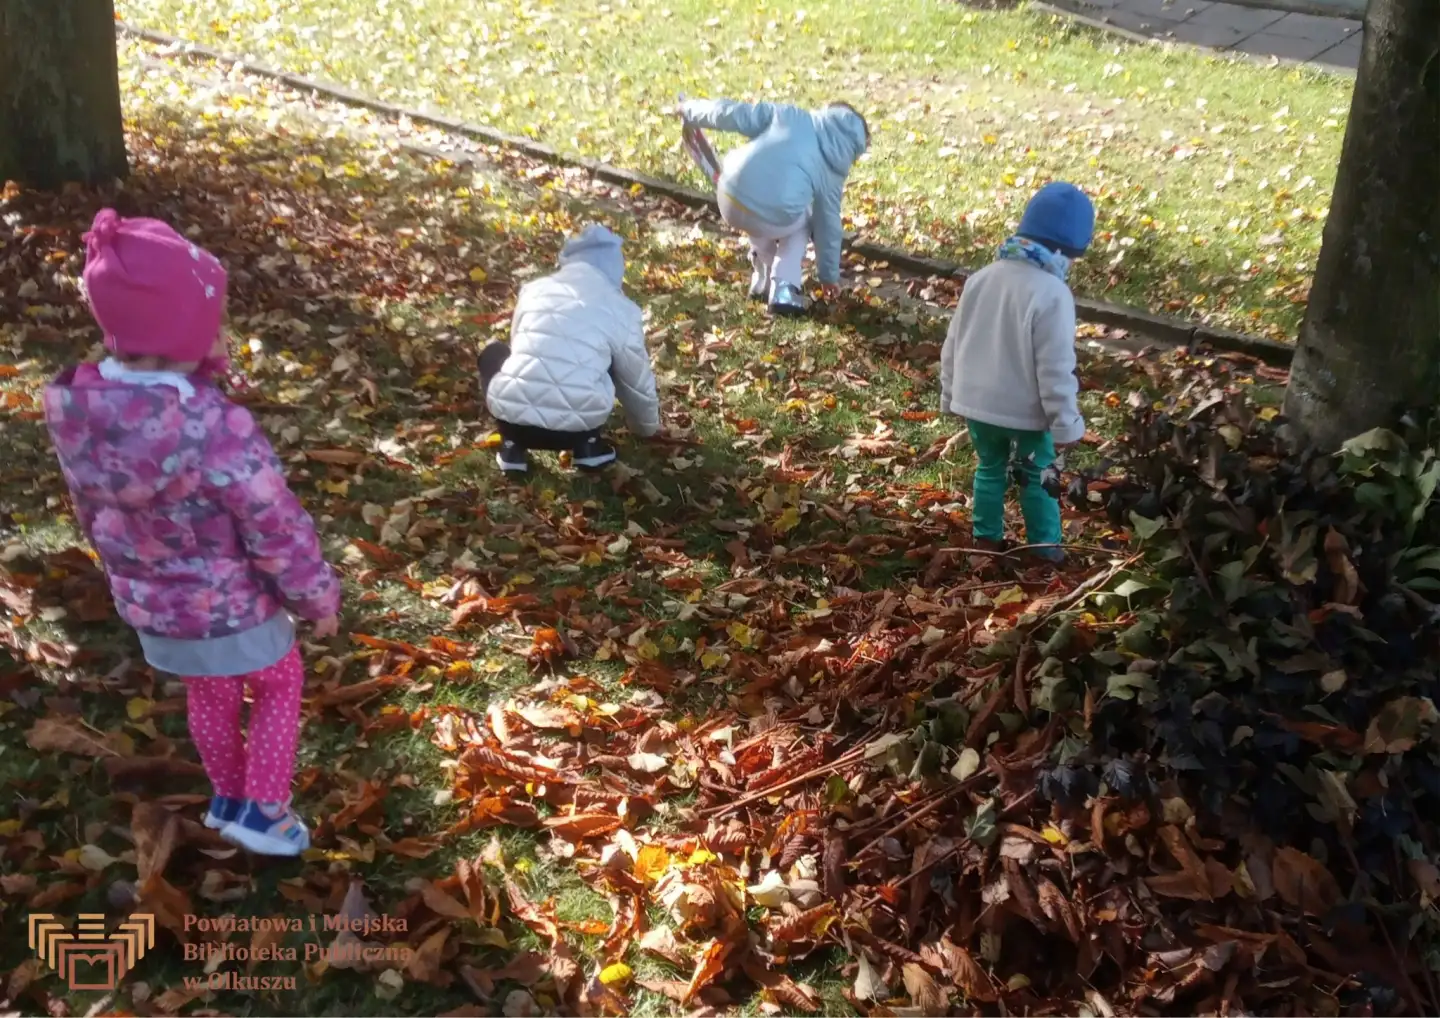 Zdjęcie zostało zrobione przed budynkiem Biblioteki. Przedstawia czwórkę dzieci zbierające liście jesienią.